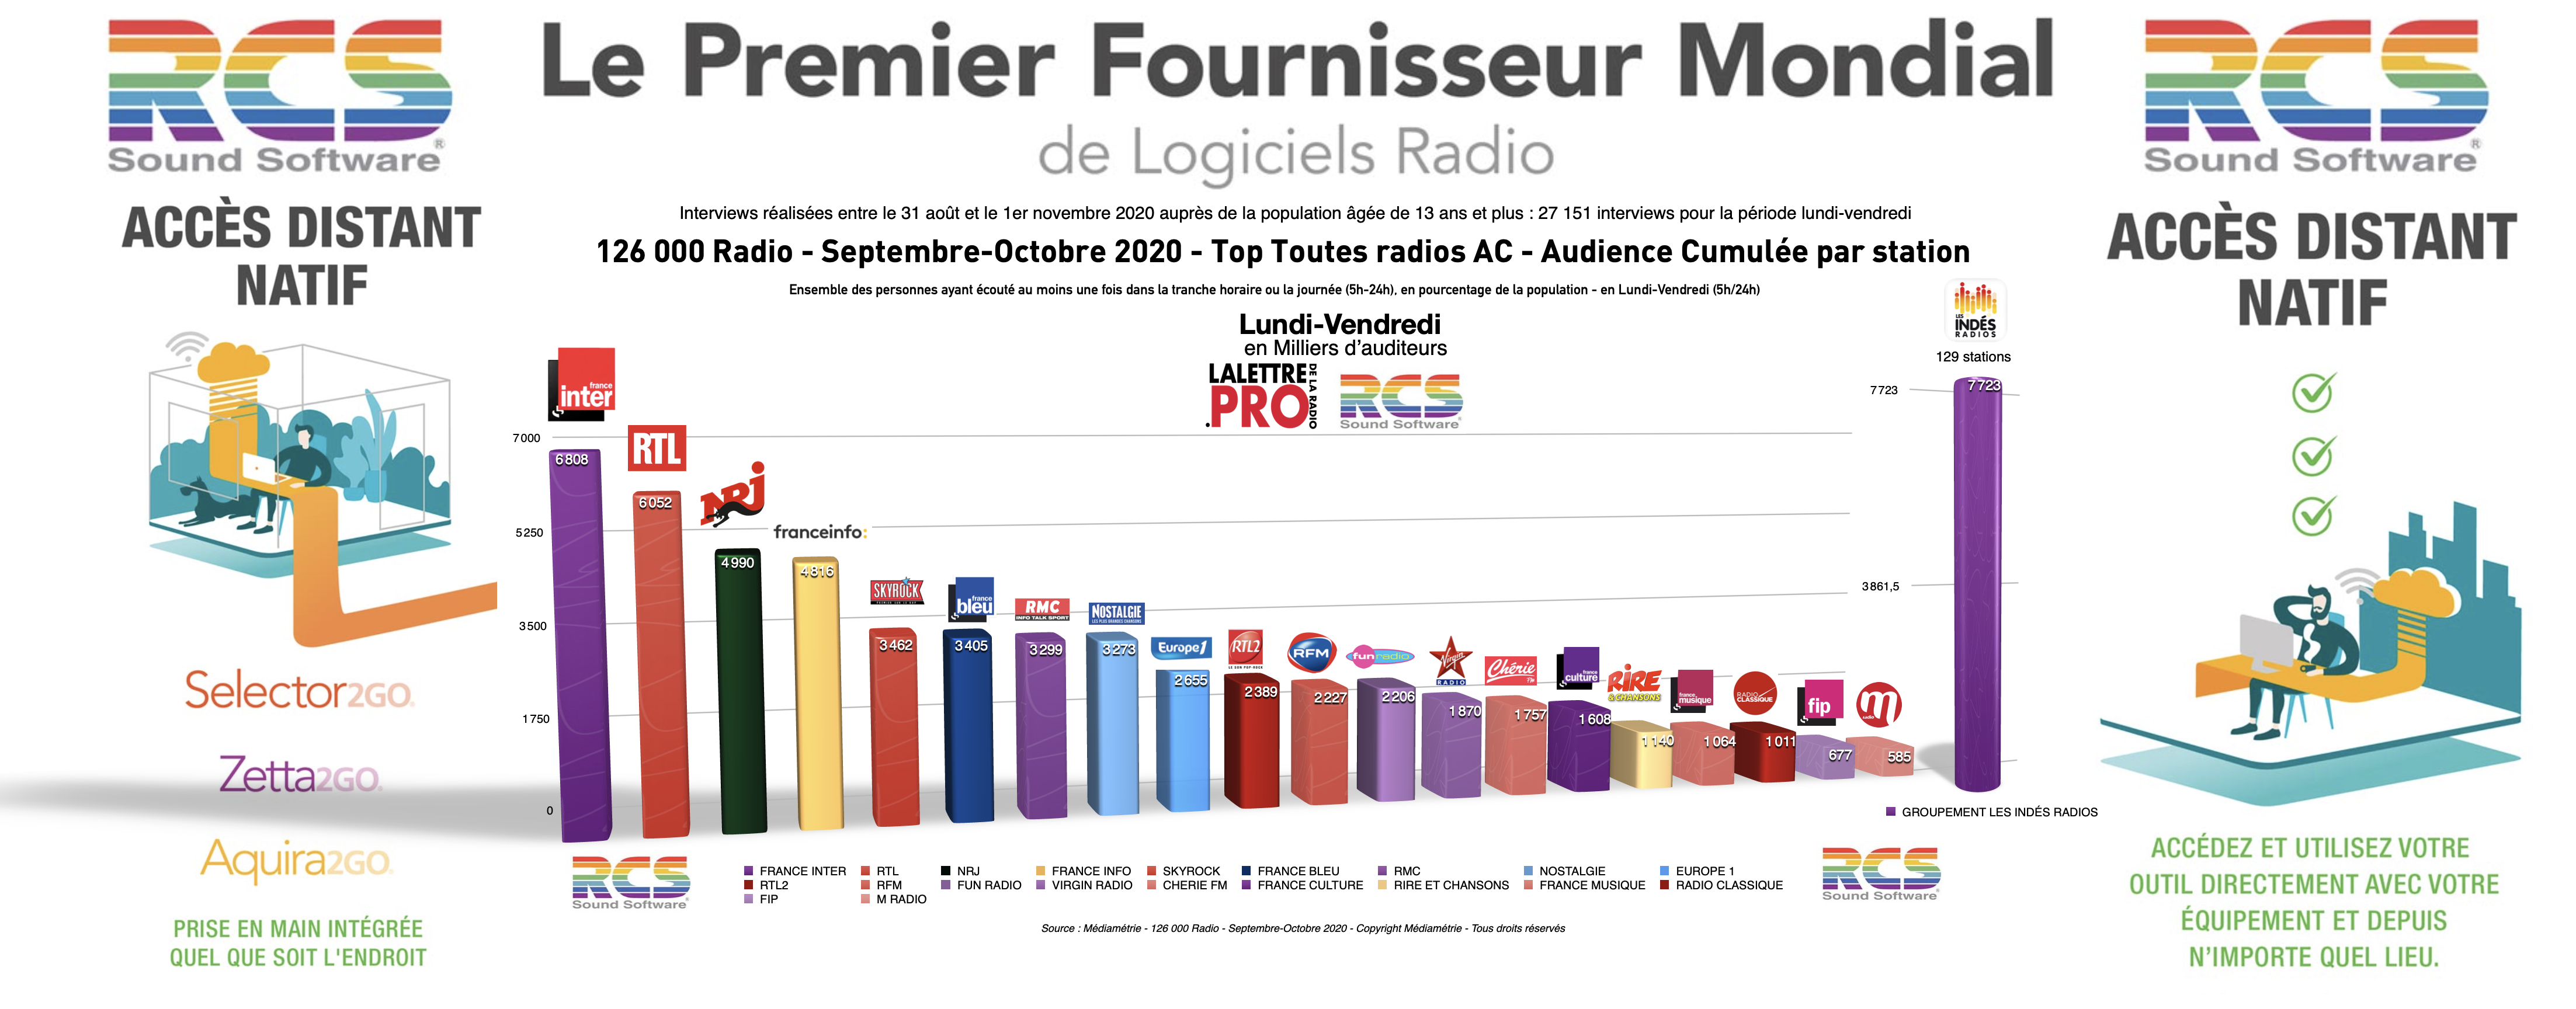 En audience cumulée, le Top 20 des radios des radios les plus écoutées en France en Septembre-Octobre 2020